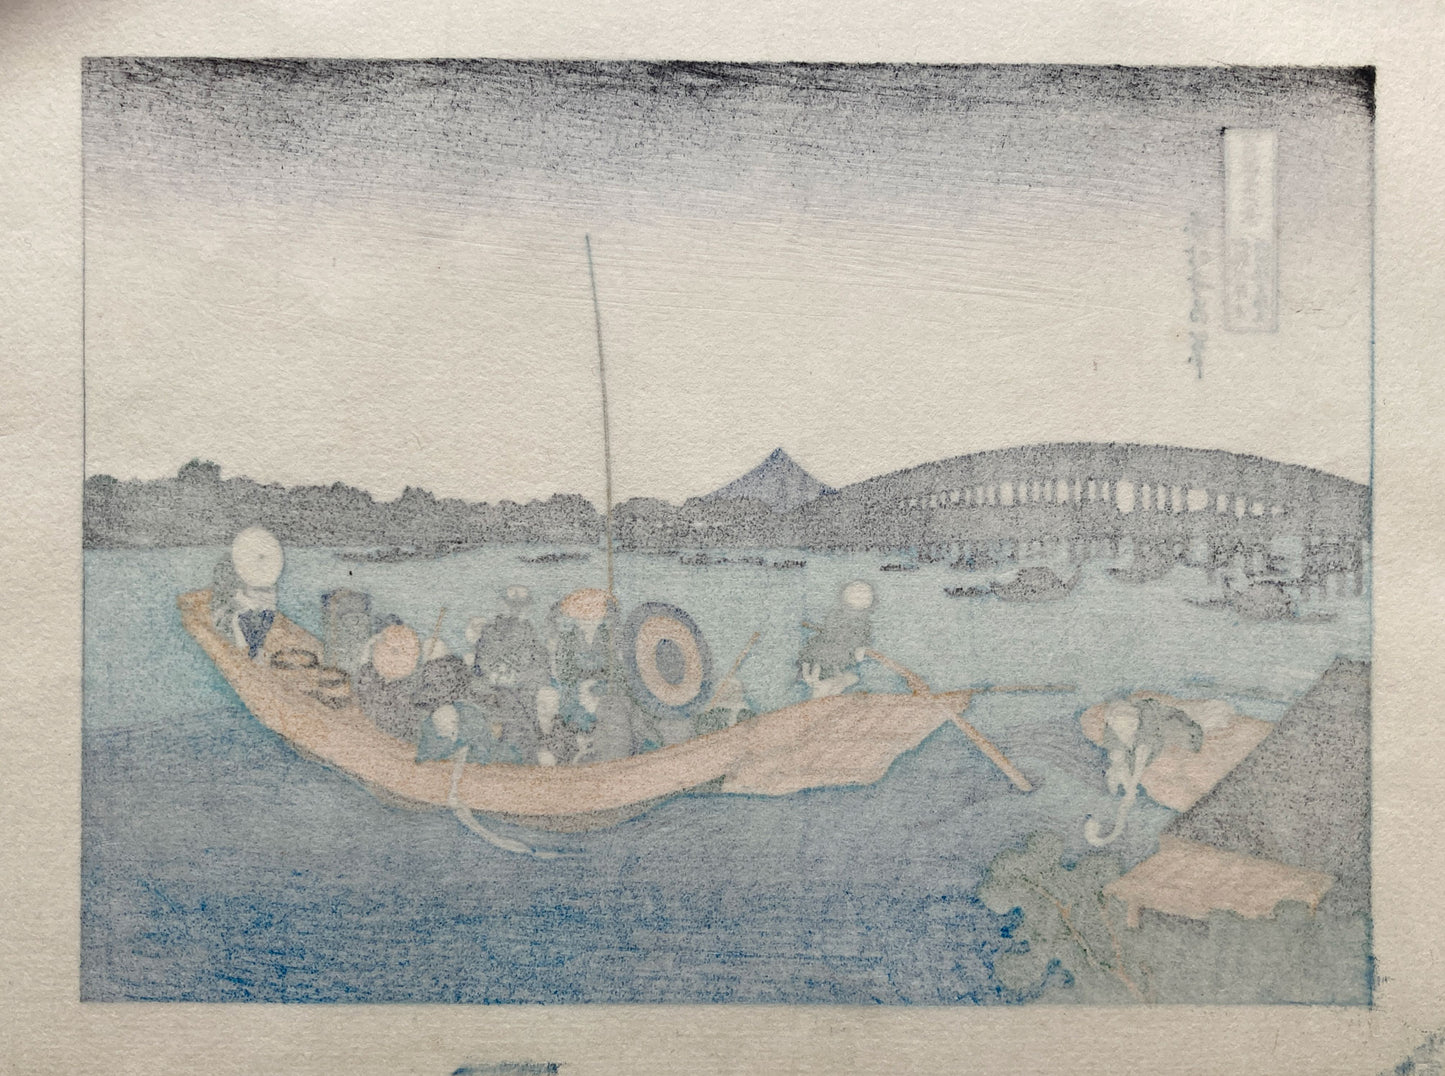 Hokusai: Onmayagashi Yori - 36 Views of Mt. Fuji